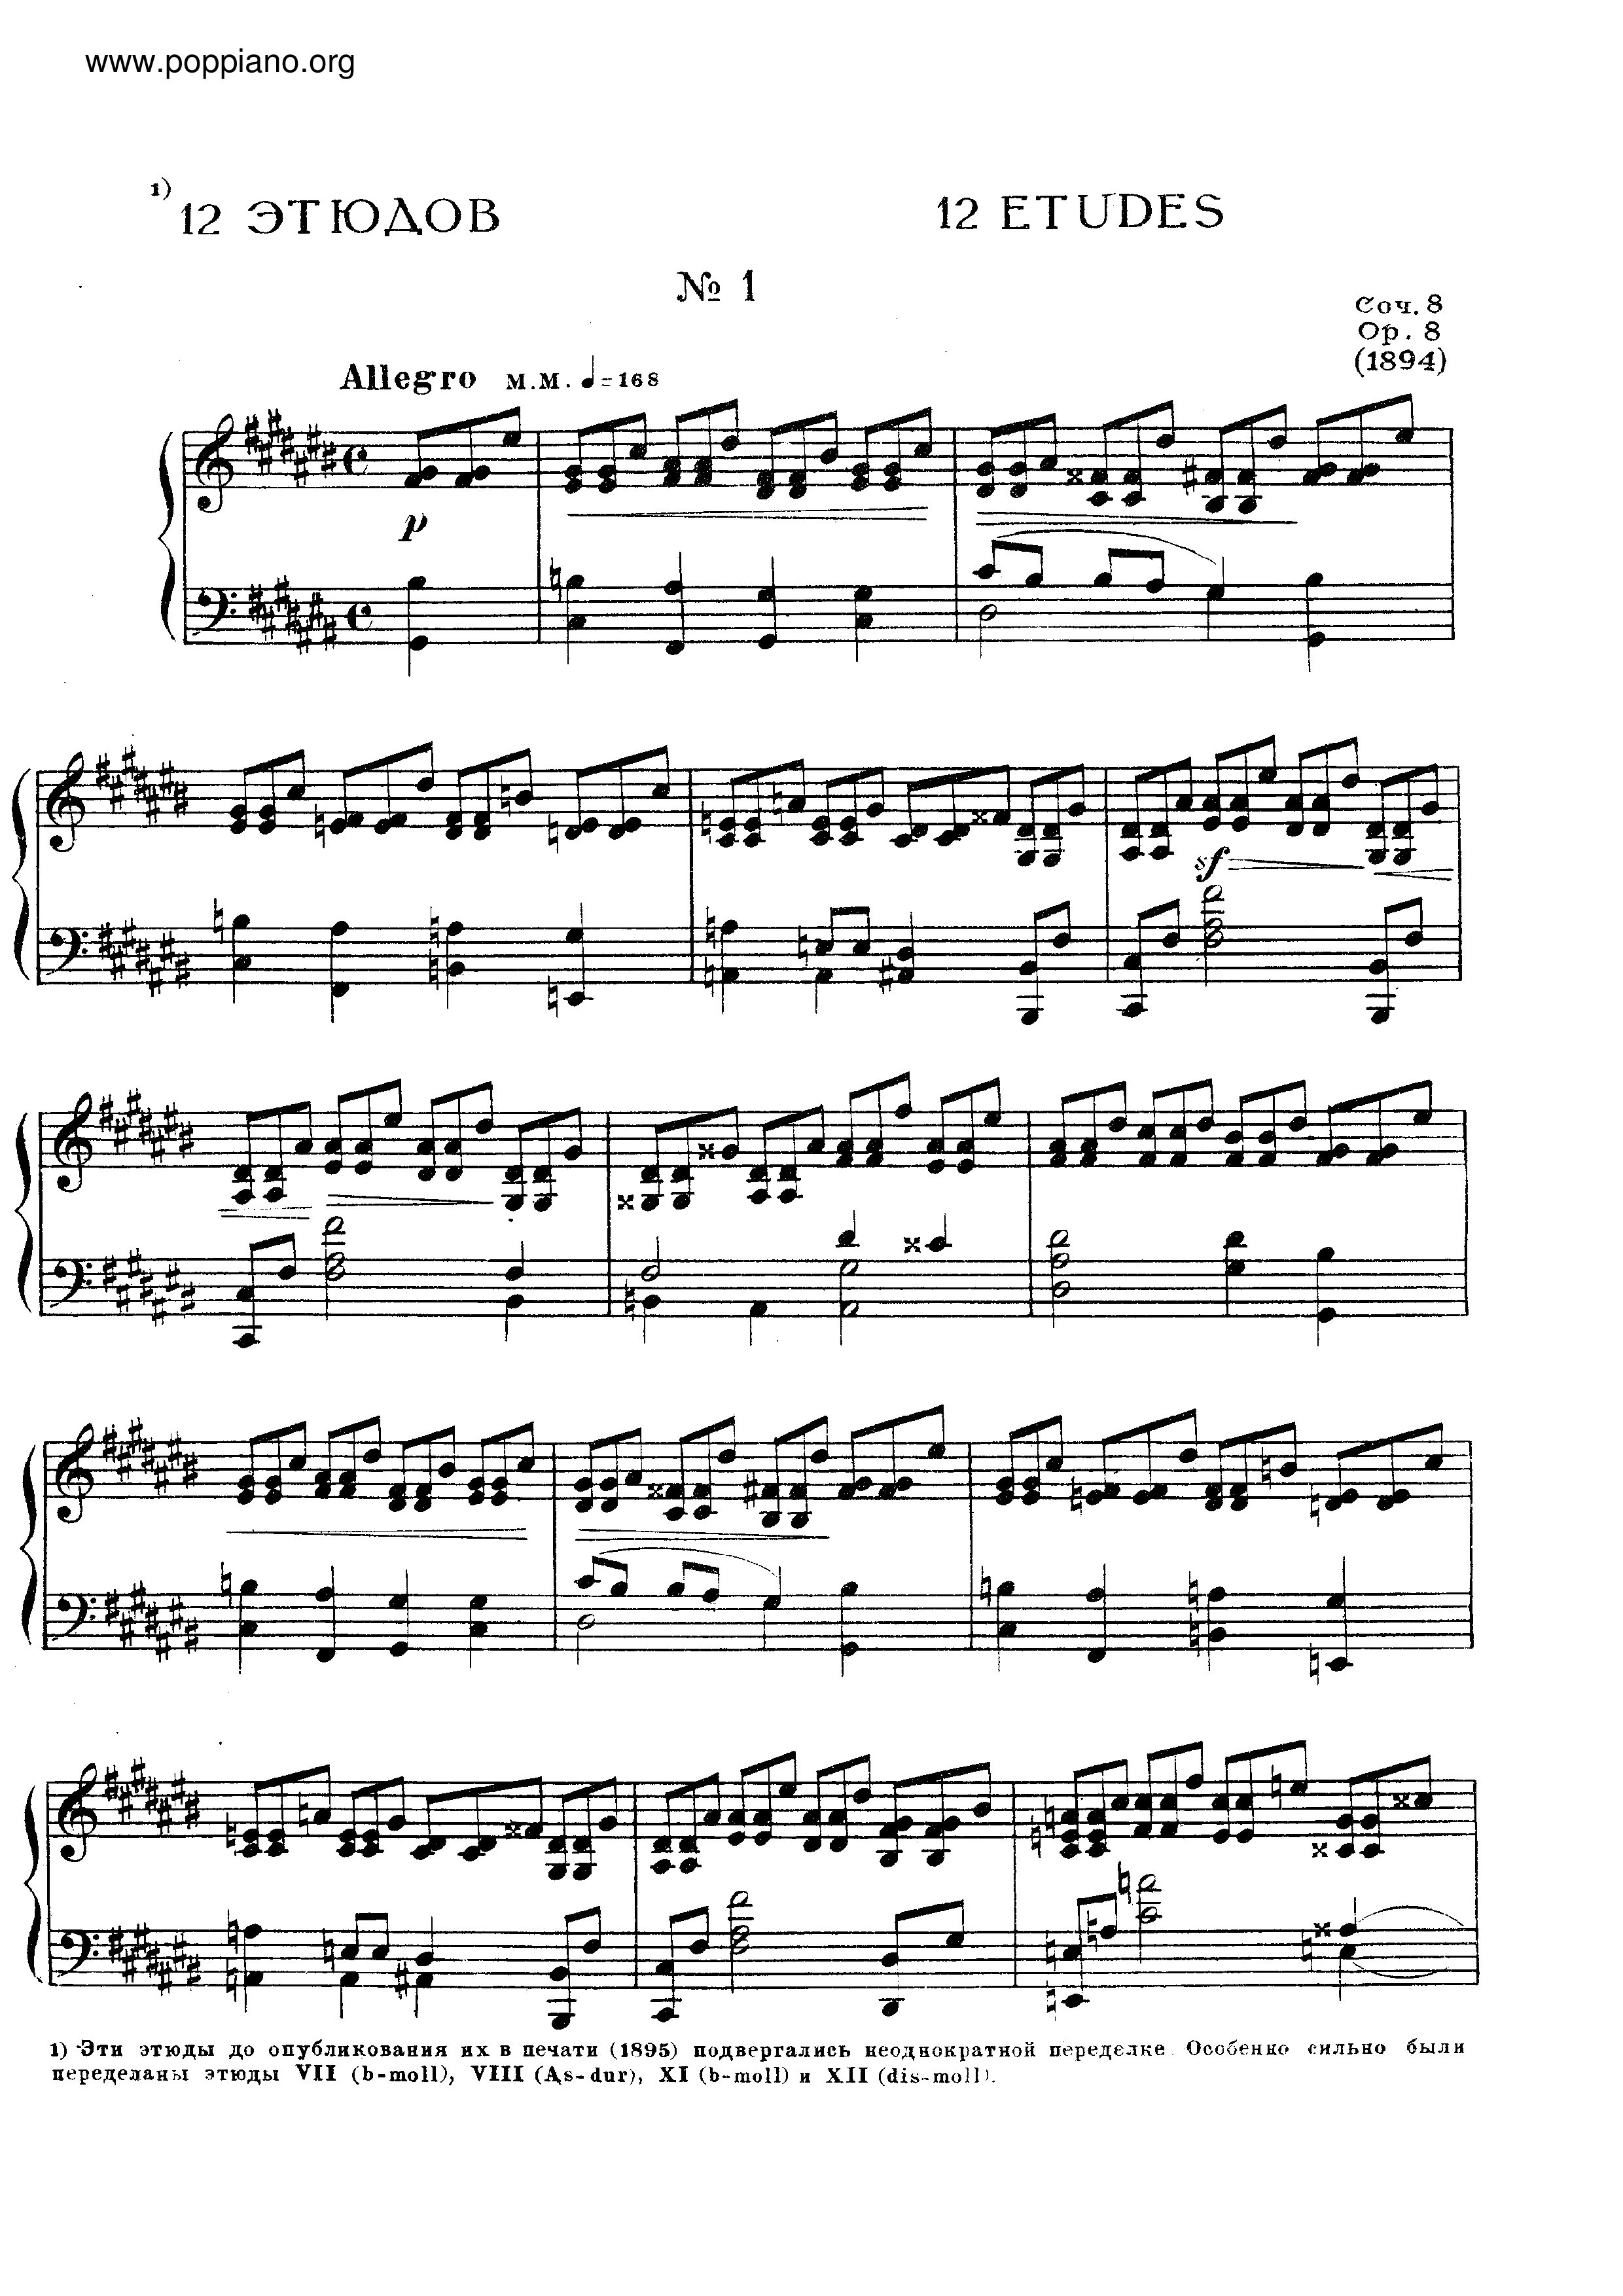 No.1 Etude in C sharp minor, Op.8 Score